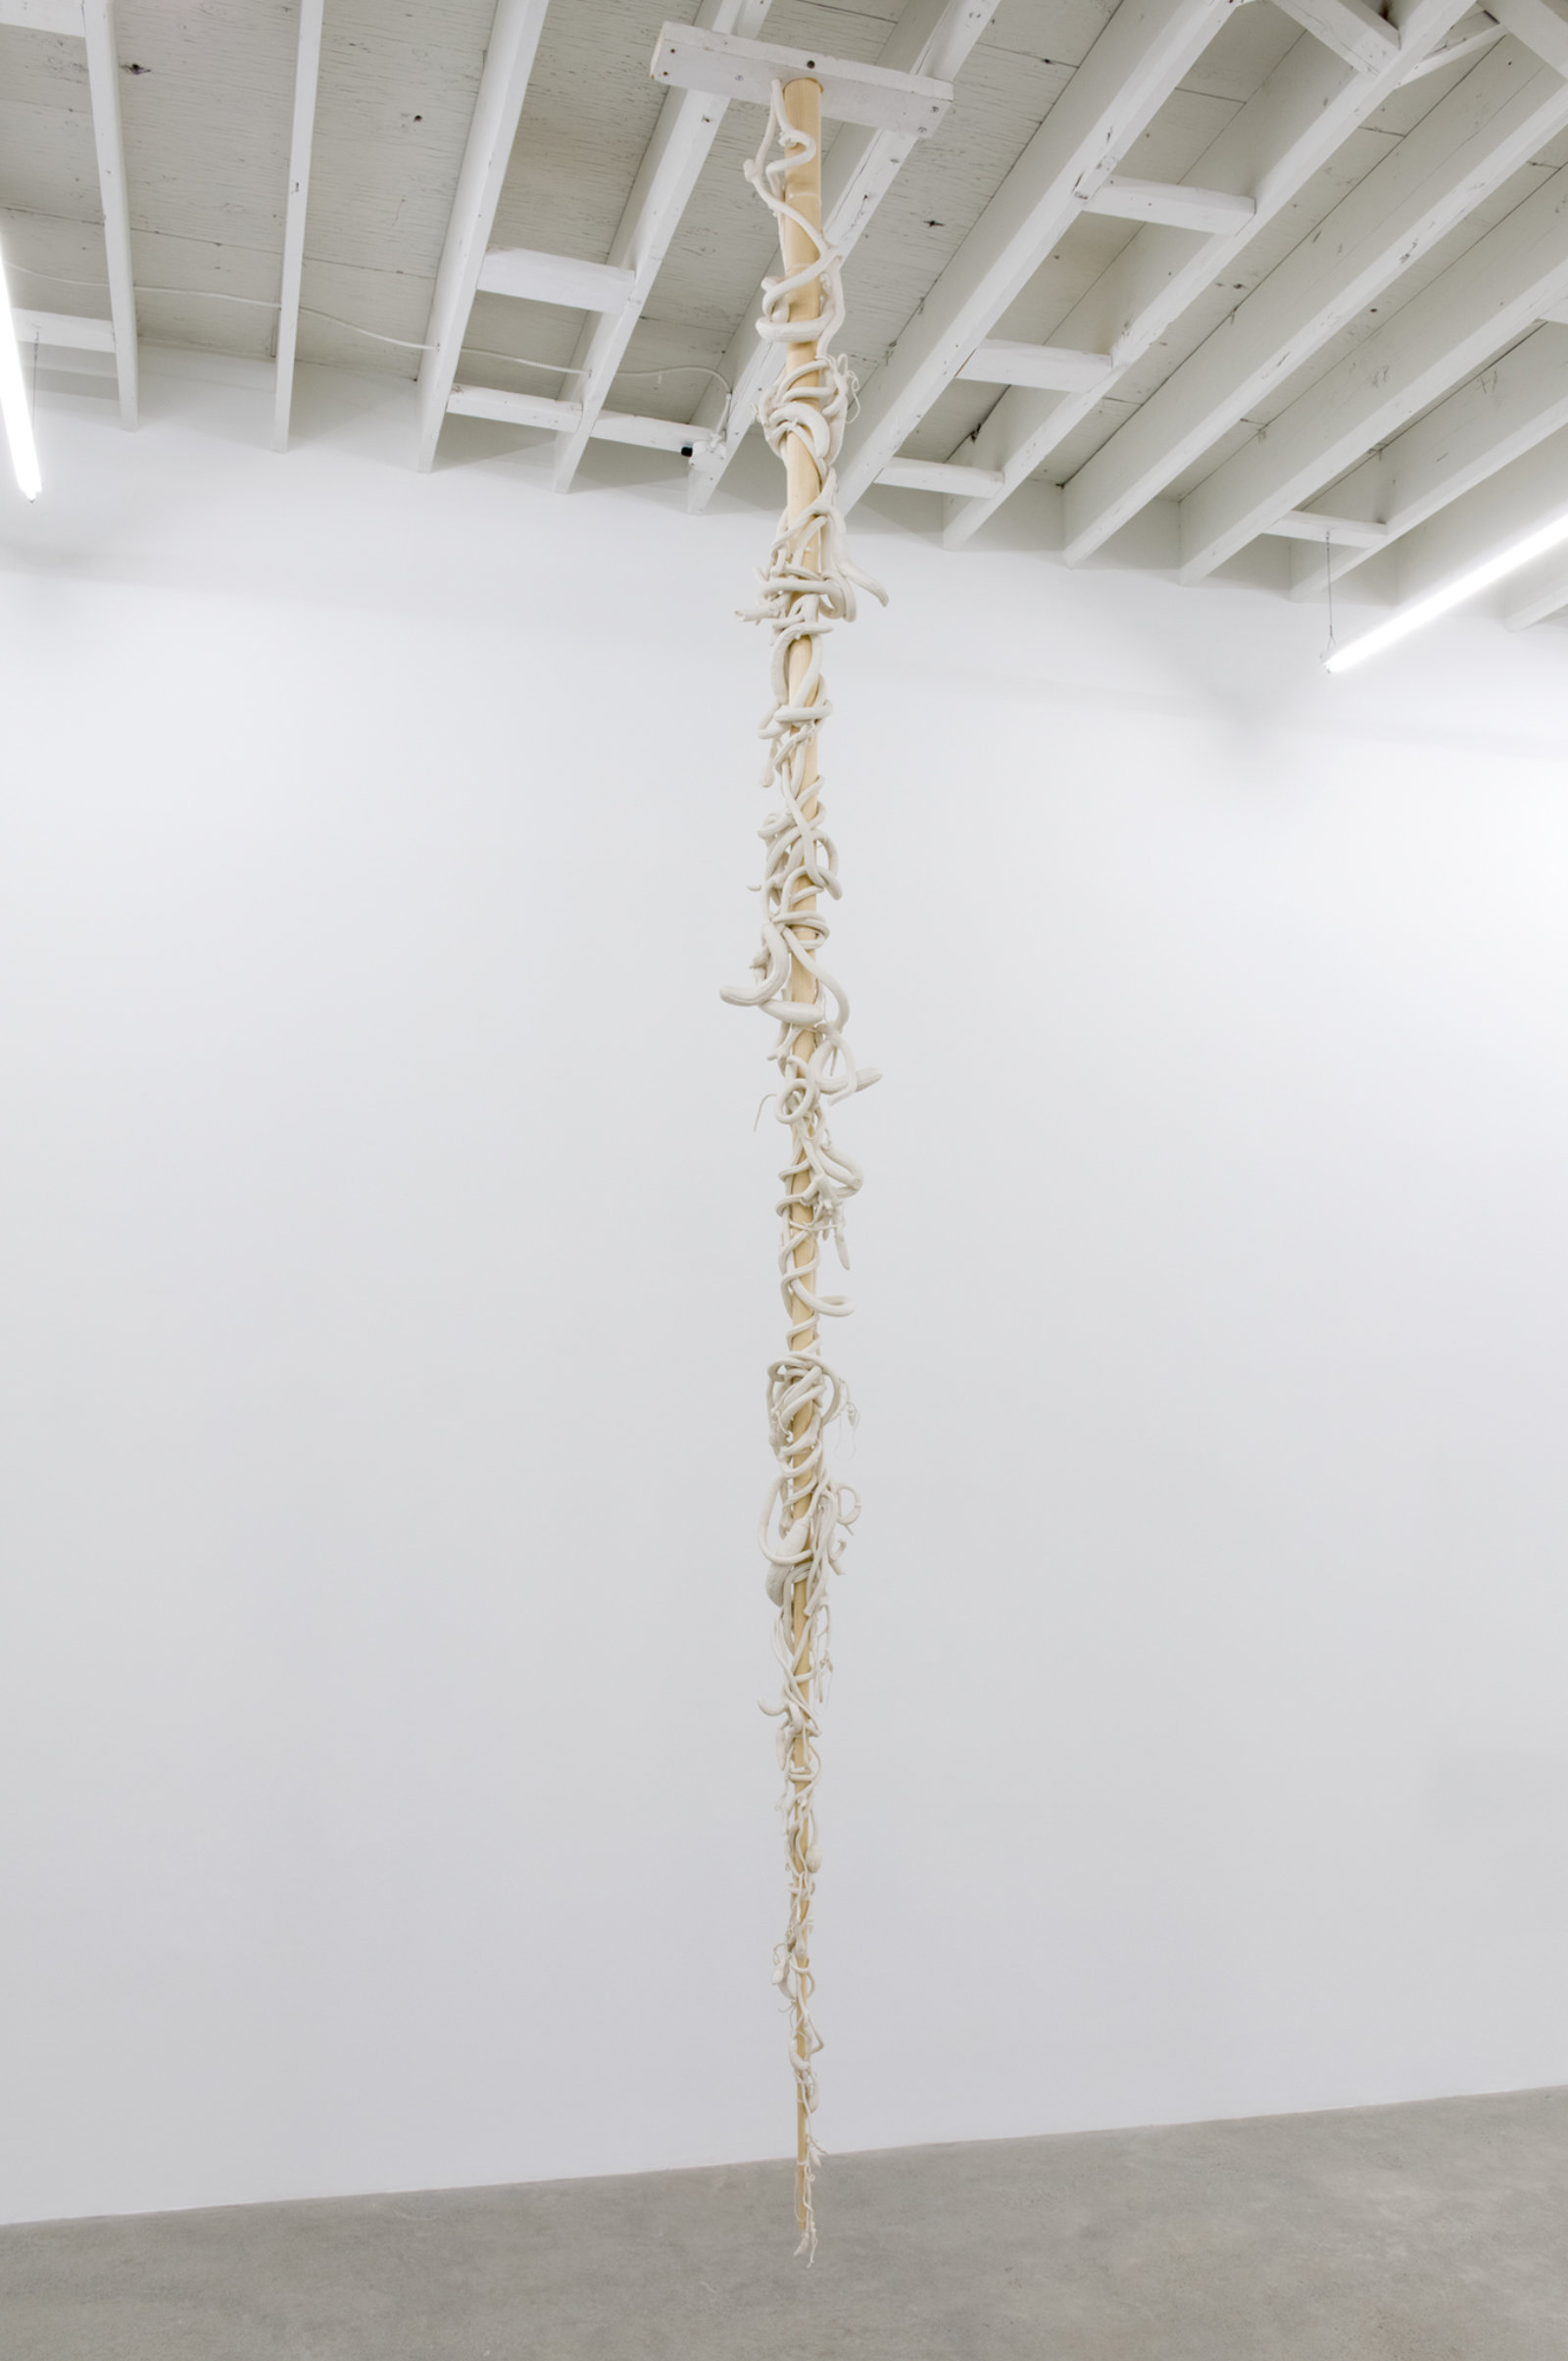 Liz Magor, Eddie’s White Wonder, 1994, silicone rubber, wood, 163 x 10 x 10 in. (414 x 25 x 25 cm)